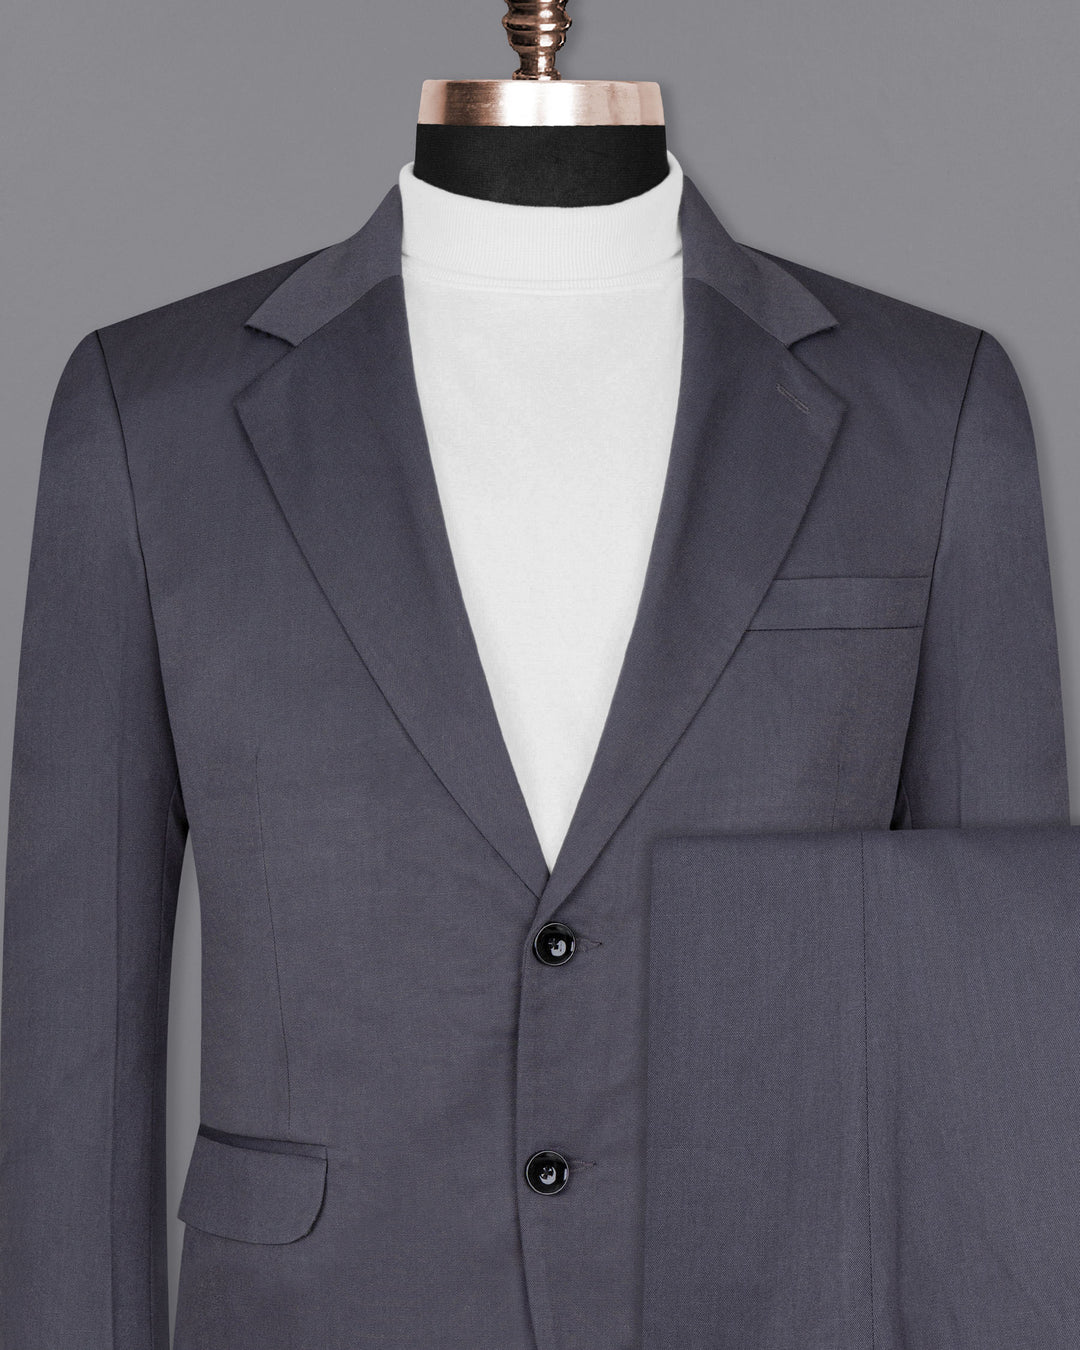 Grey Cotton Suit For Men